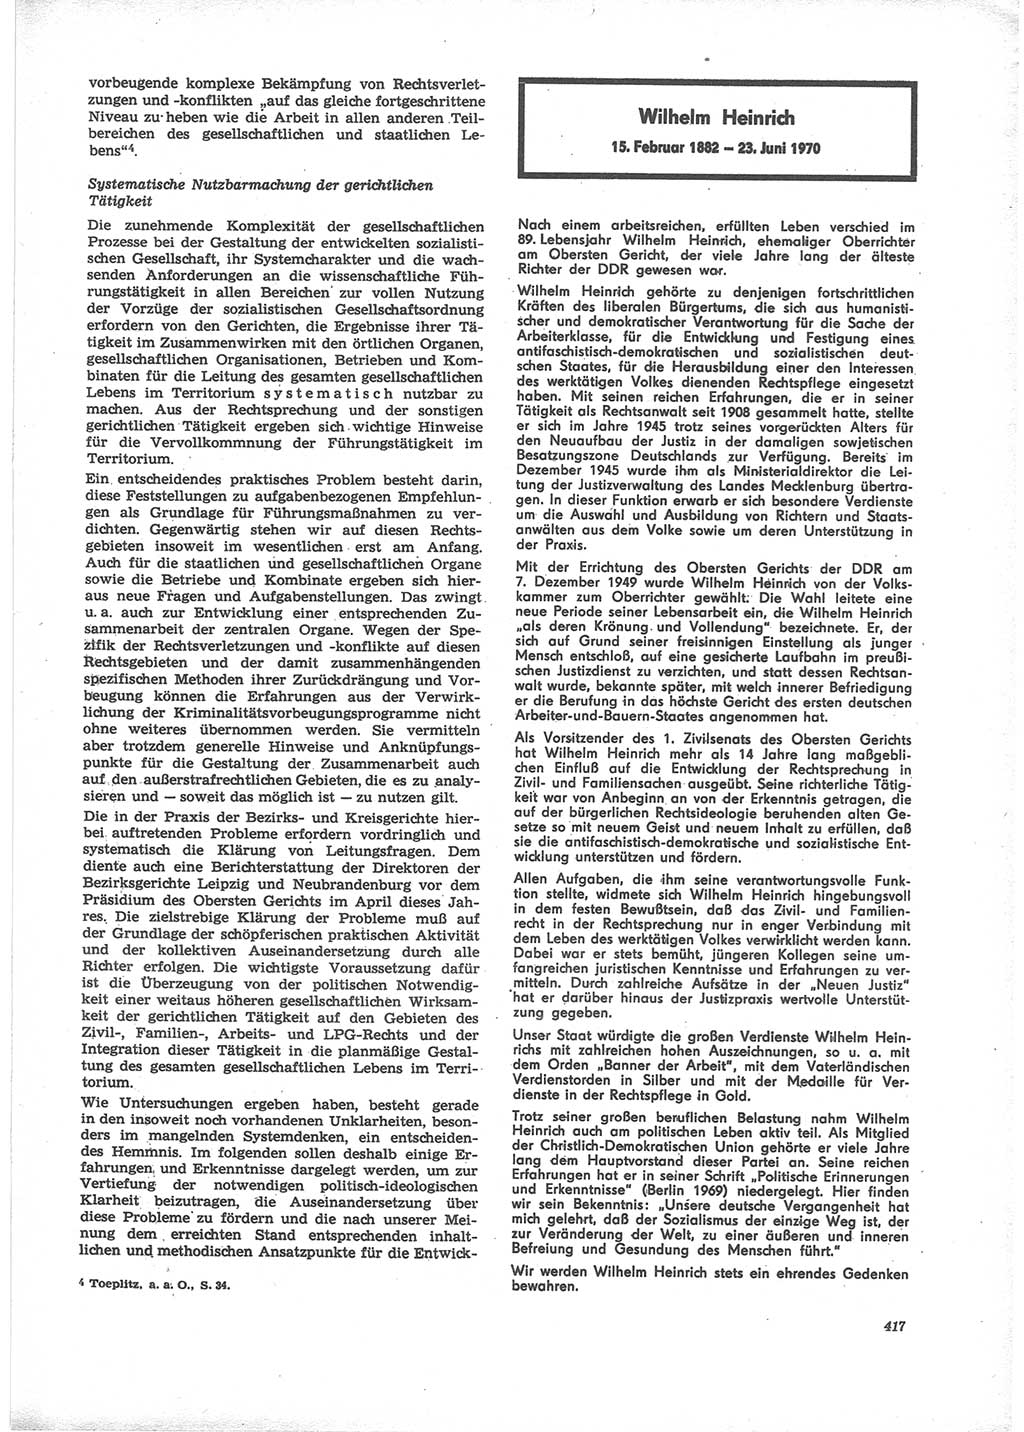 Neue Justiz (NJ), Zeitschrift für Recht und Rechtswissenschaft [Deutsche Demokratische Republik (DDR)], 24. Jahrgang 1970, Seite 417 (NJ DDR 1970, S. 417)